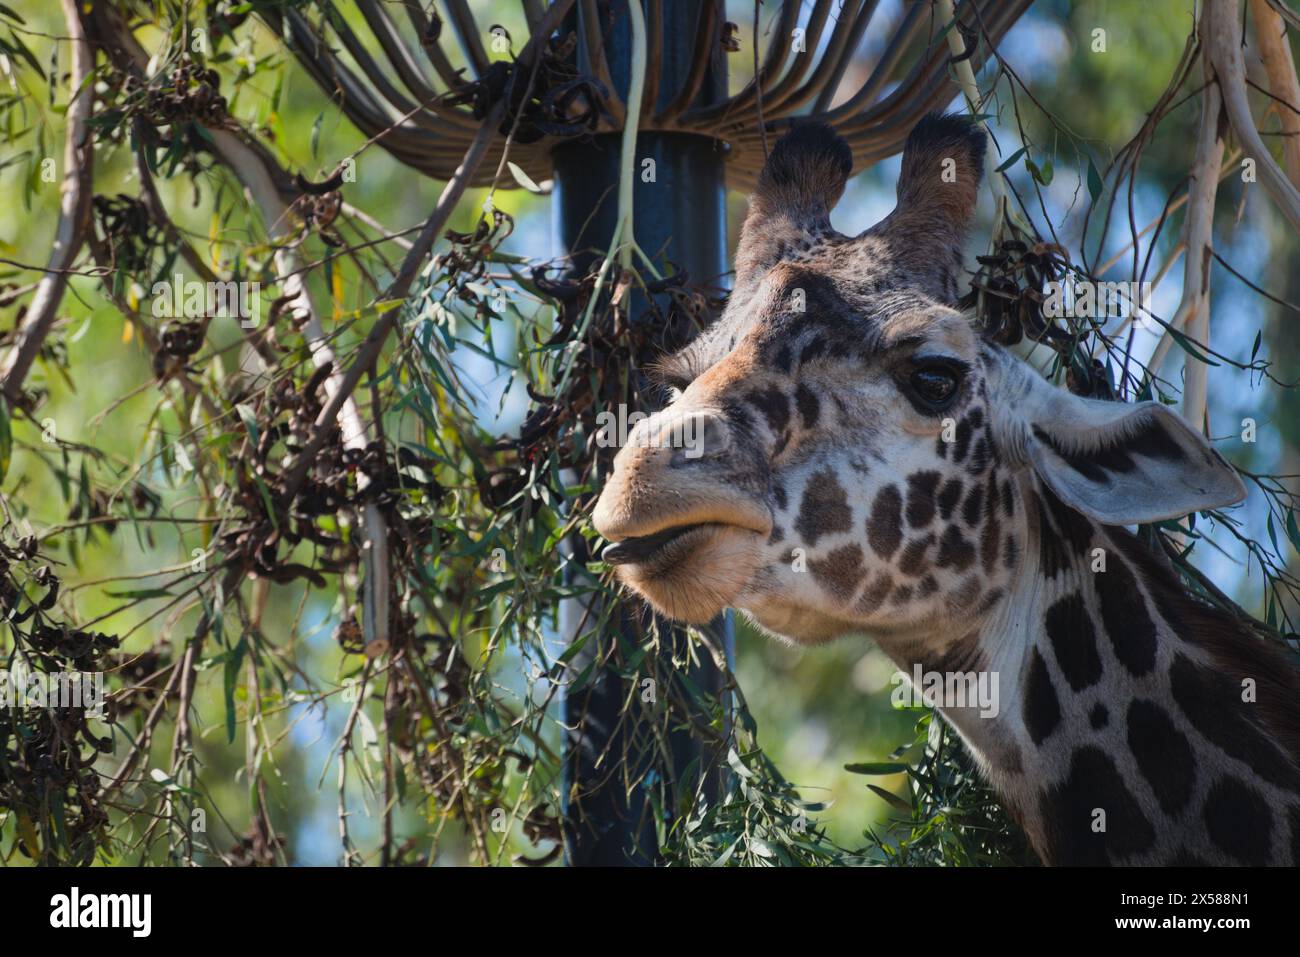 Amusant et intéressant gros plan de girafe avec sa bouche un trou .. Détail fin de son cou supérieur, visage, oeil, oreilles, ainsi que ses motifs aléatoires de beauté. Banque D'Images